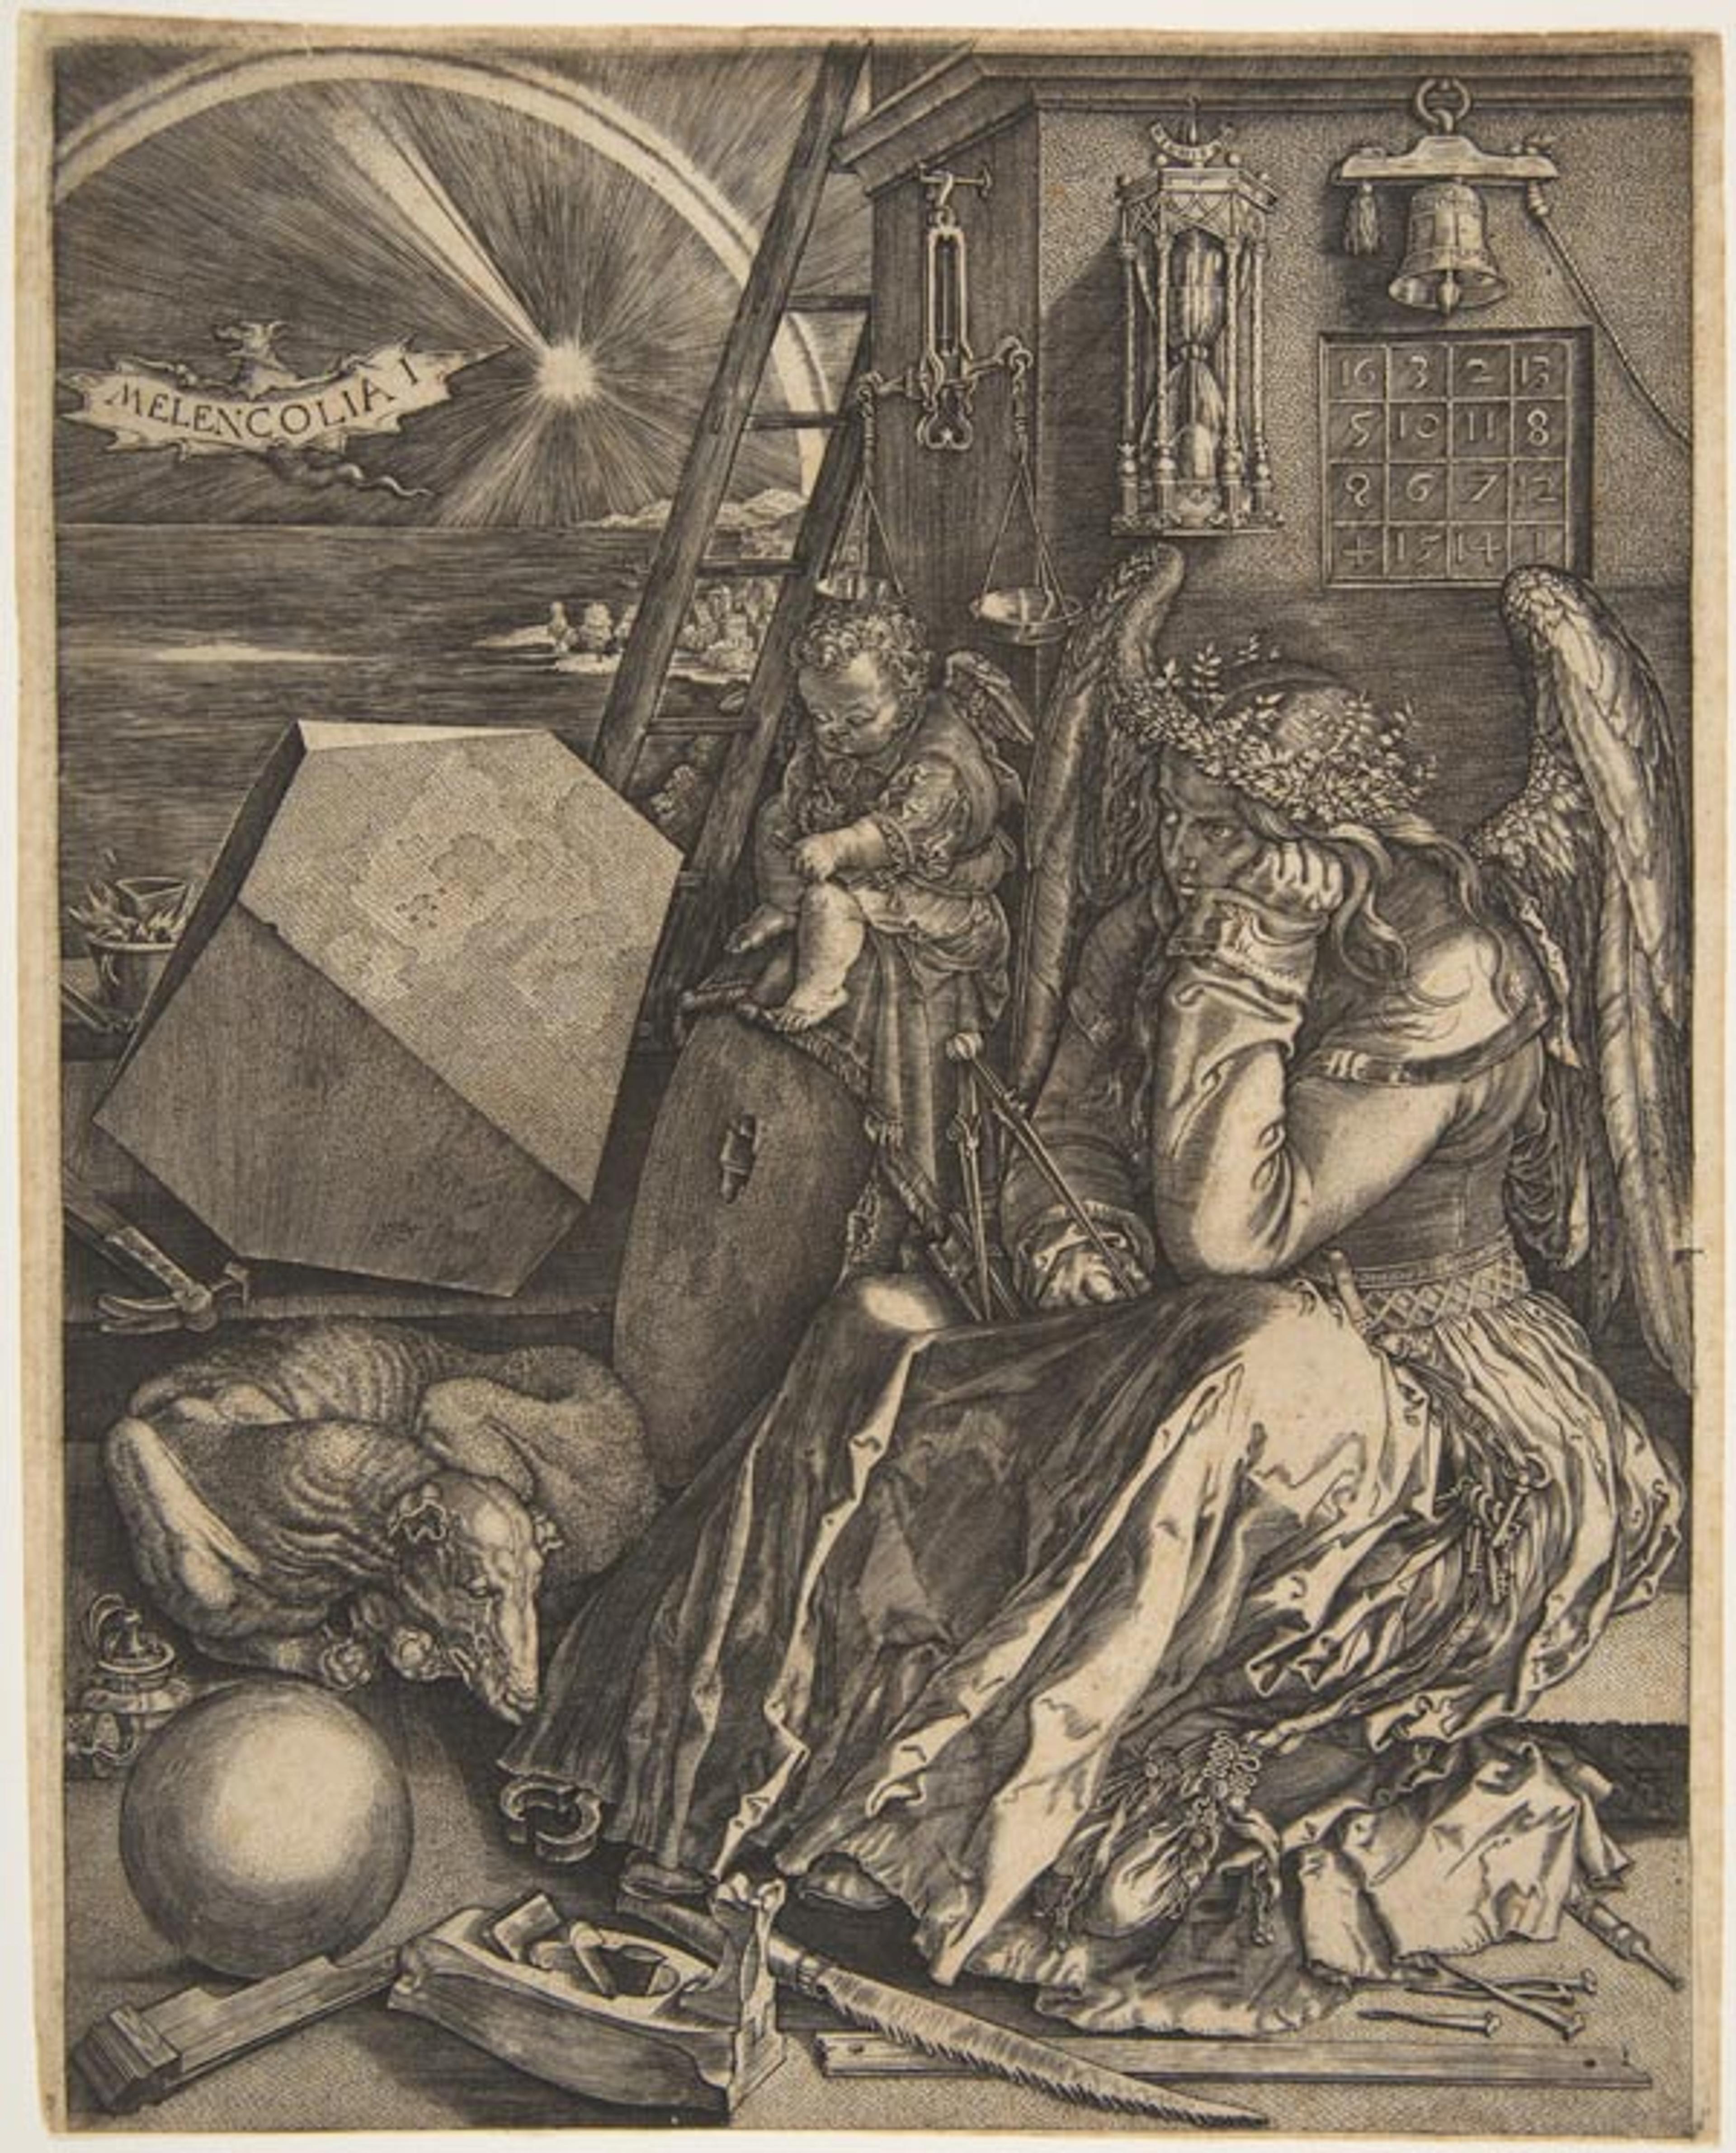 Jan Wierix (Netherlandish, 1549-1615), after Albrecht Dürer (German, 1471-1528), Melencolia I, 1602